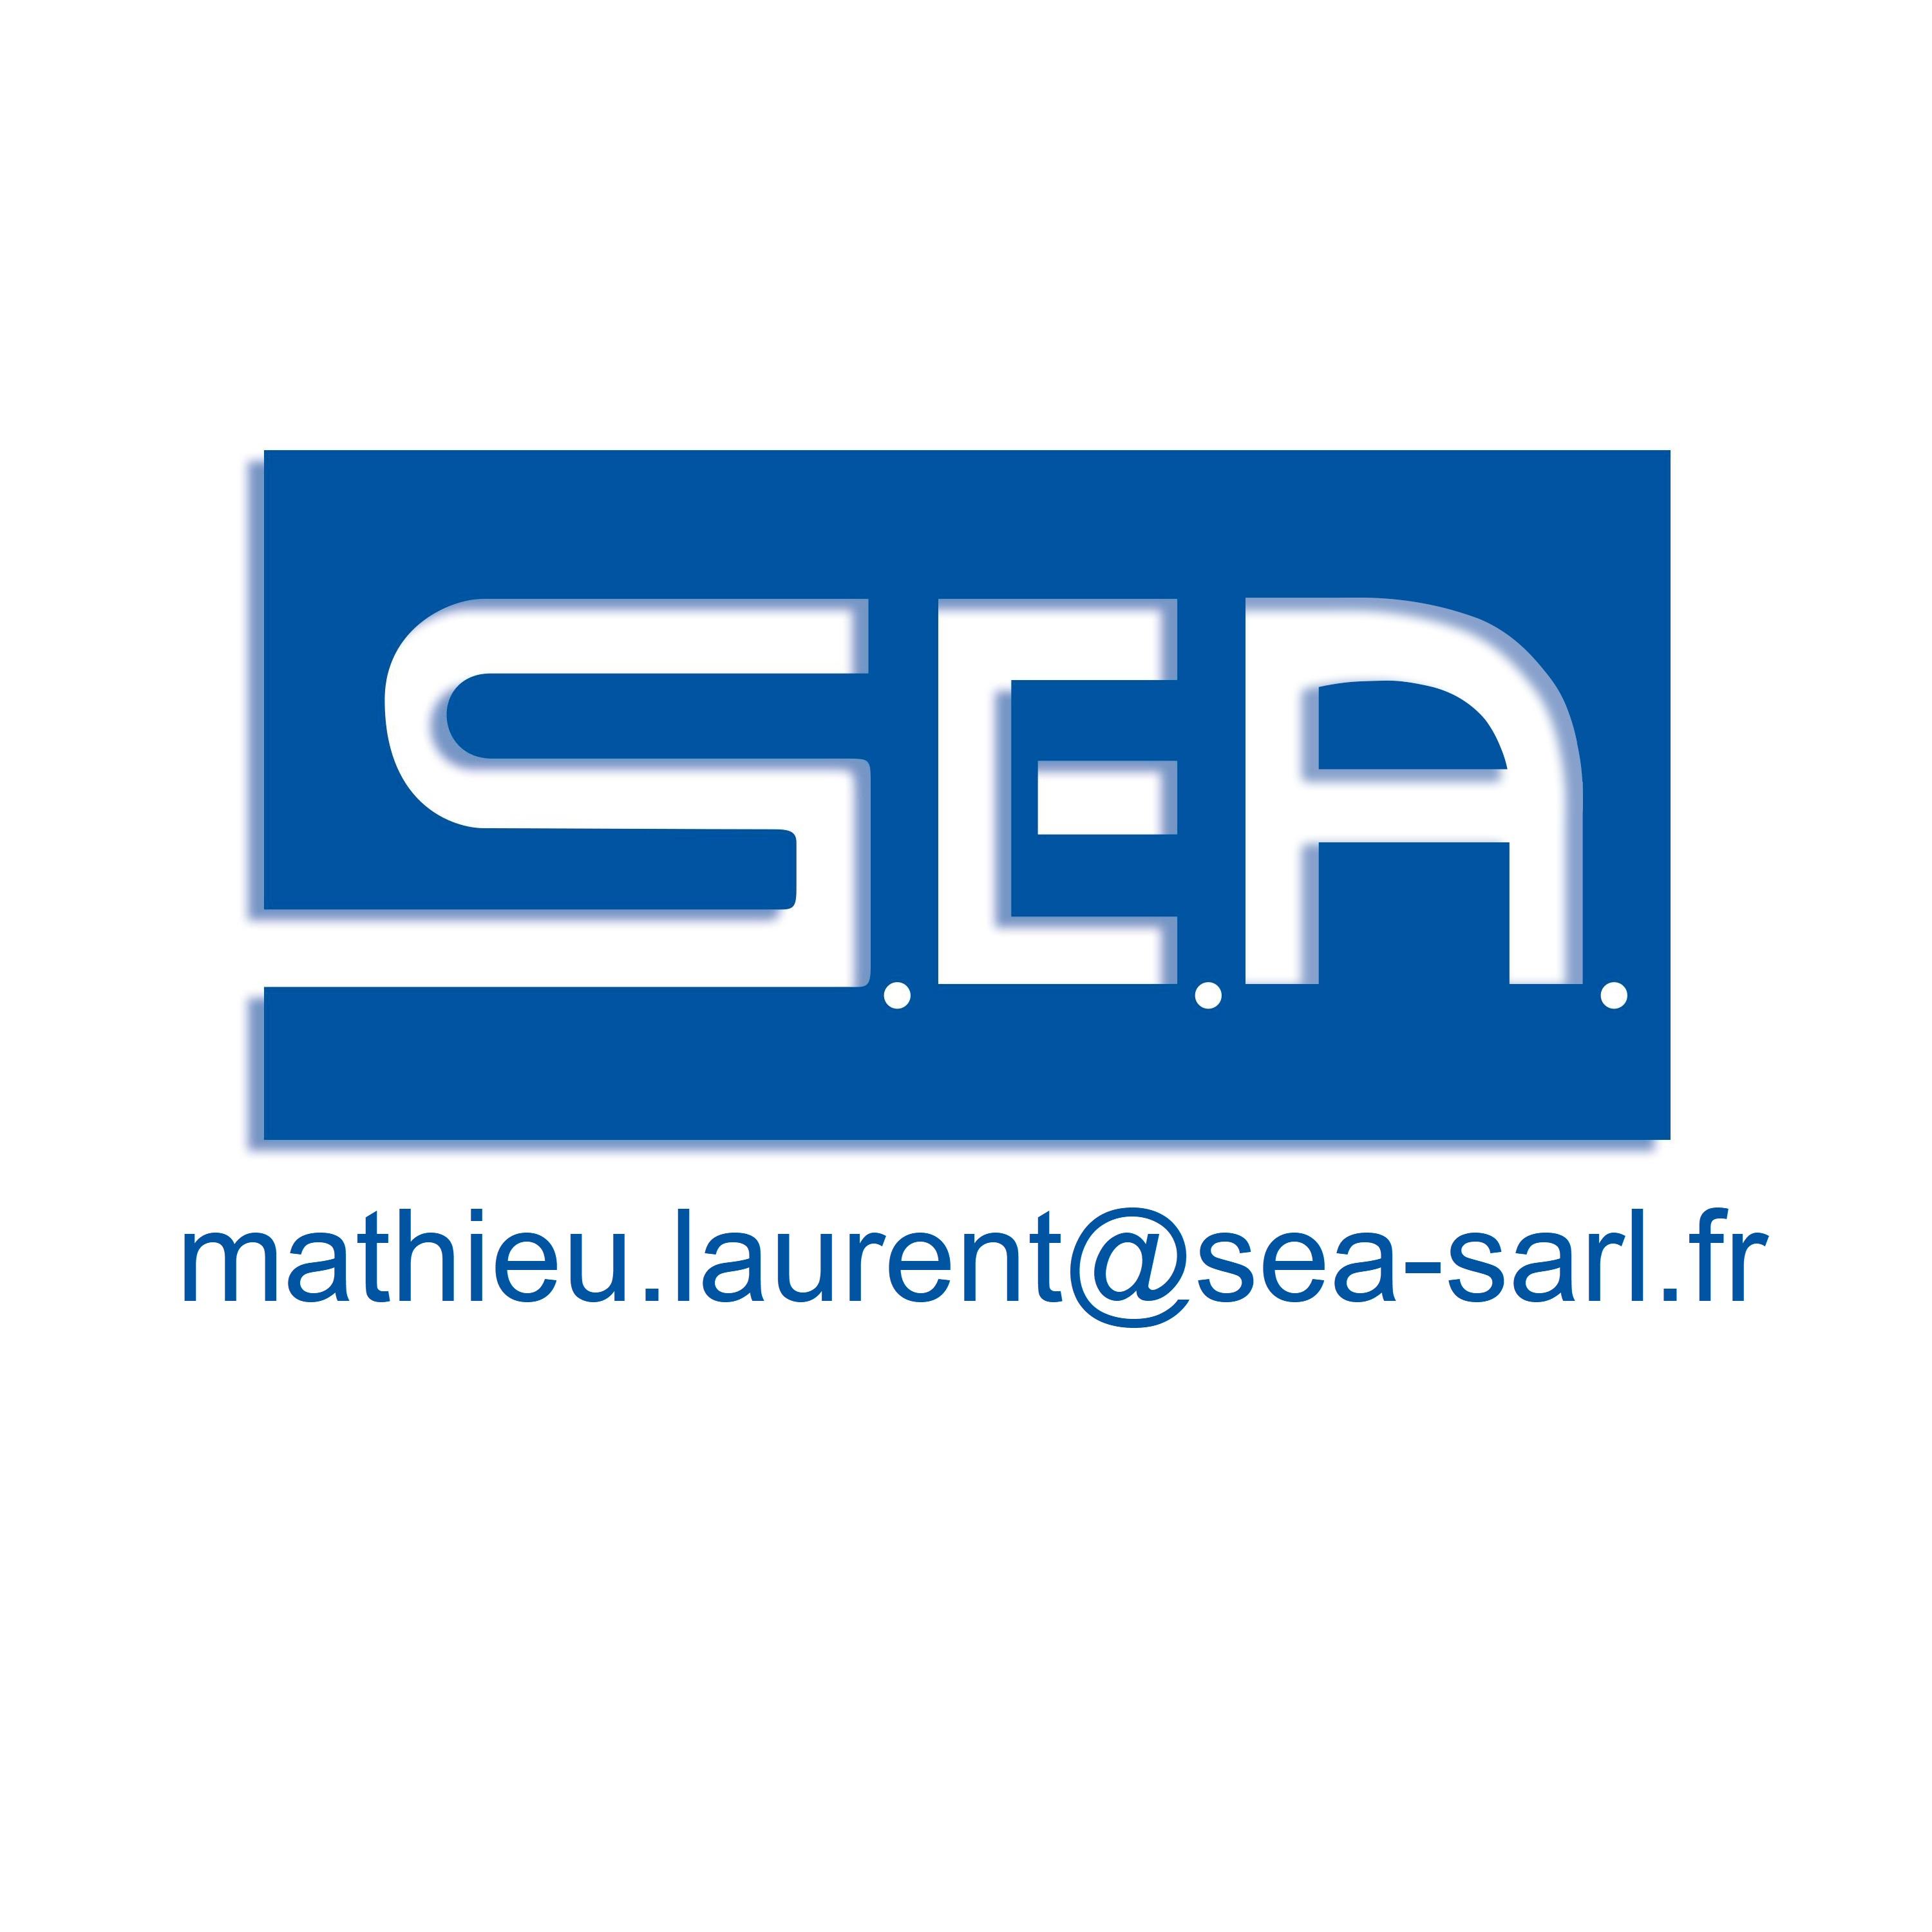 mathieu.laurent@sea-sarl.fr